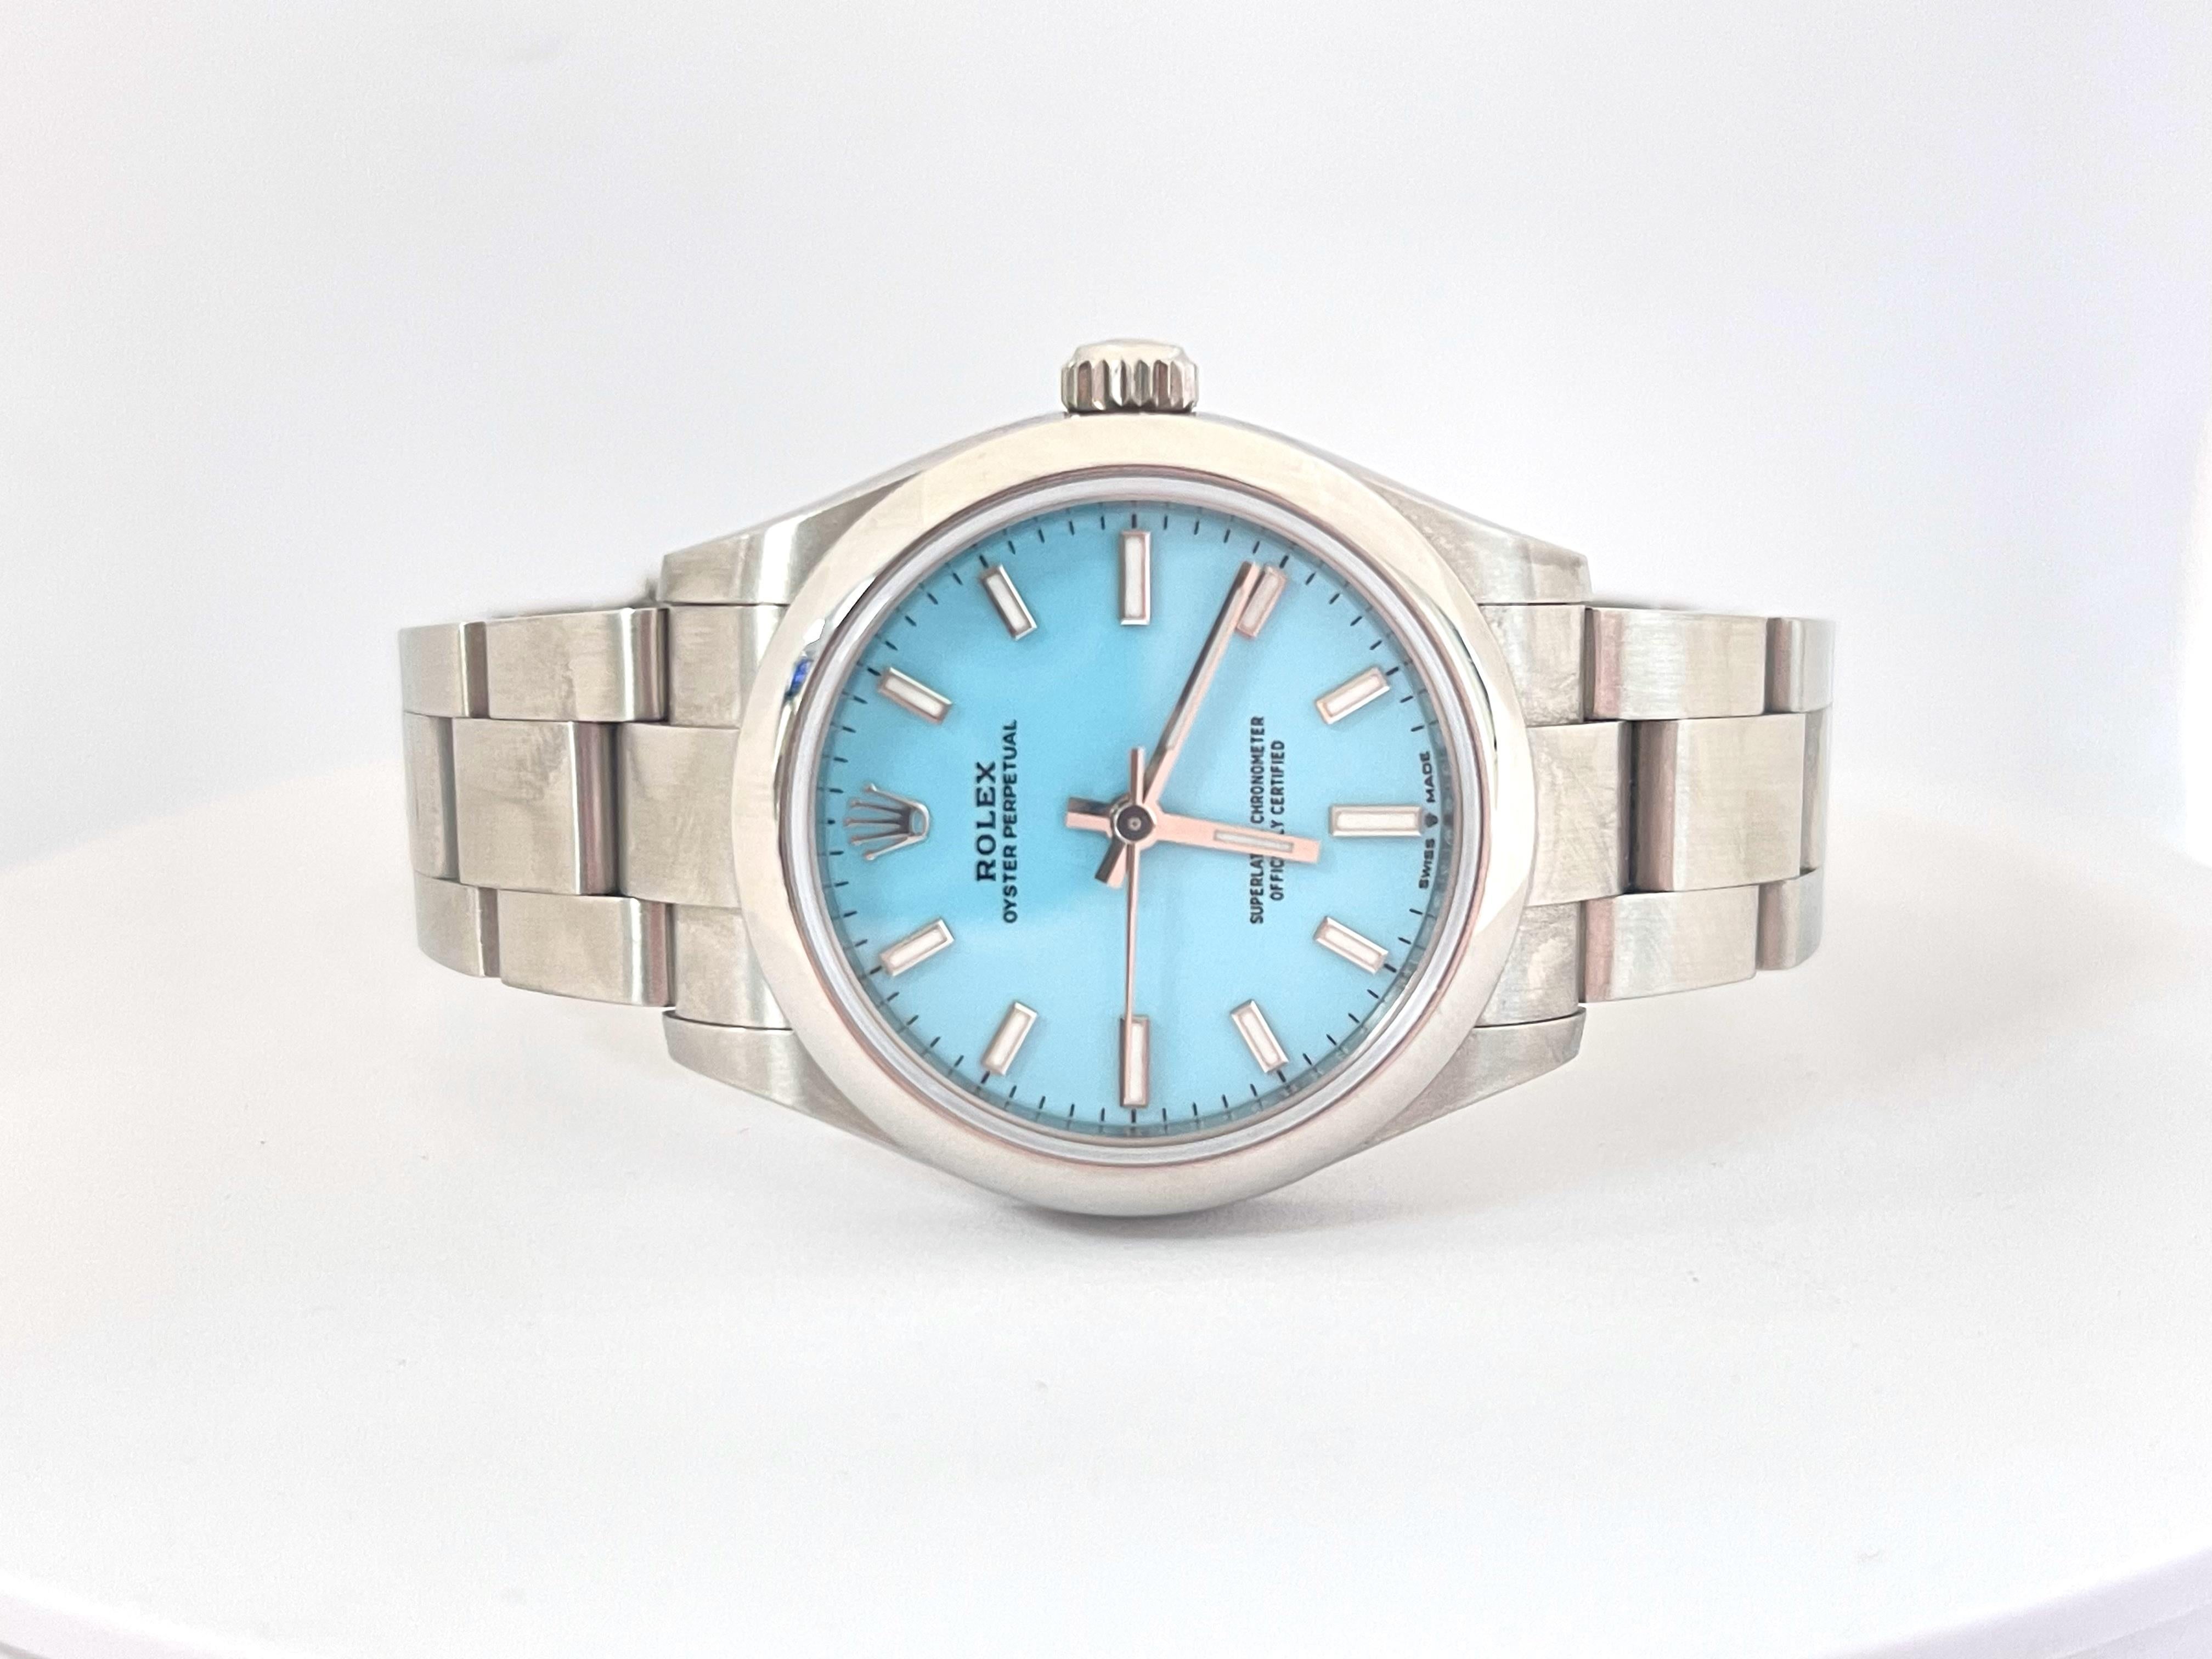 Rolex Oyster Perpetual 31mm Turquoise Blue Dial Steel Watch 277200. Cette montre est l'une des couleurs les plus recherchées dans cette catégorie. Neuf, jamais utilisé, avec une étiquette blanche attachée. 

*Expédition gratuite aux États-Unis